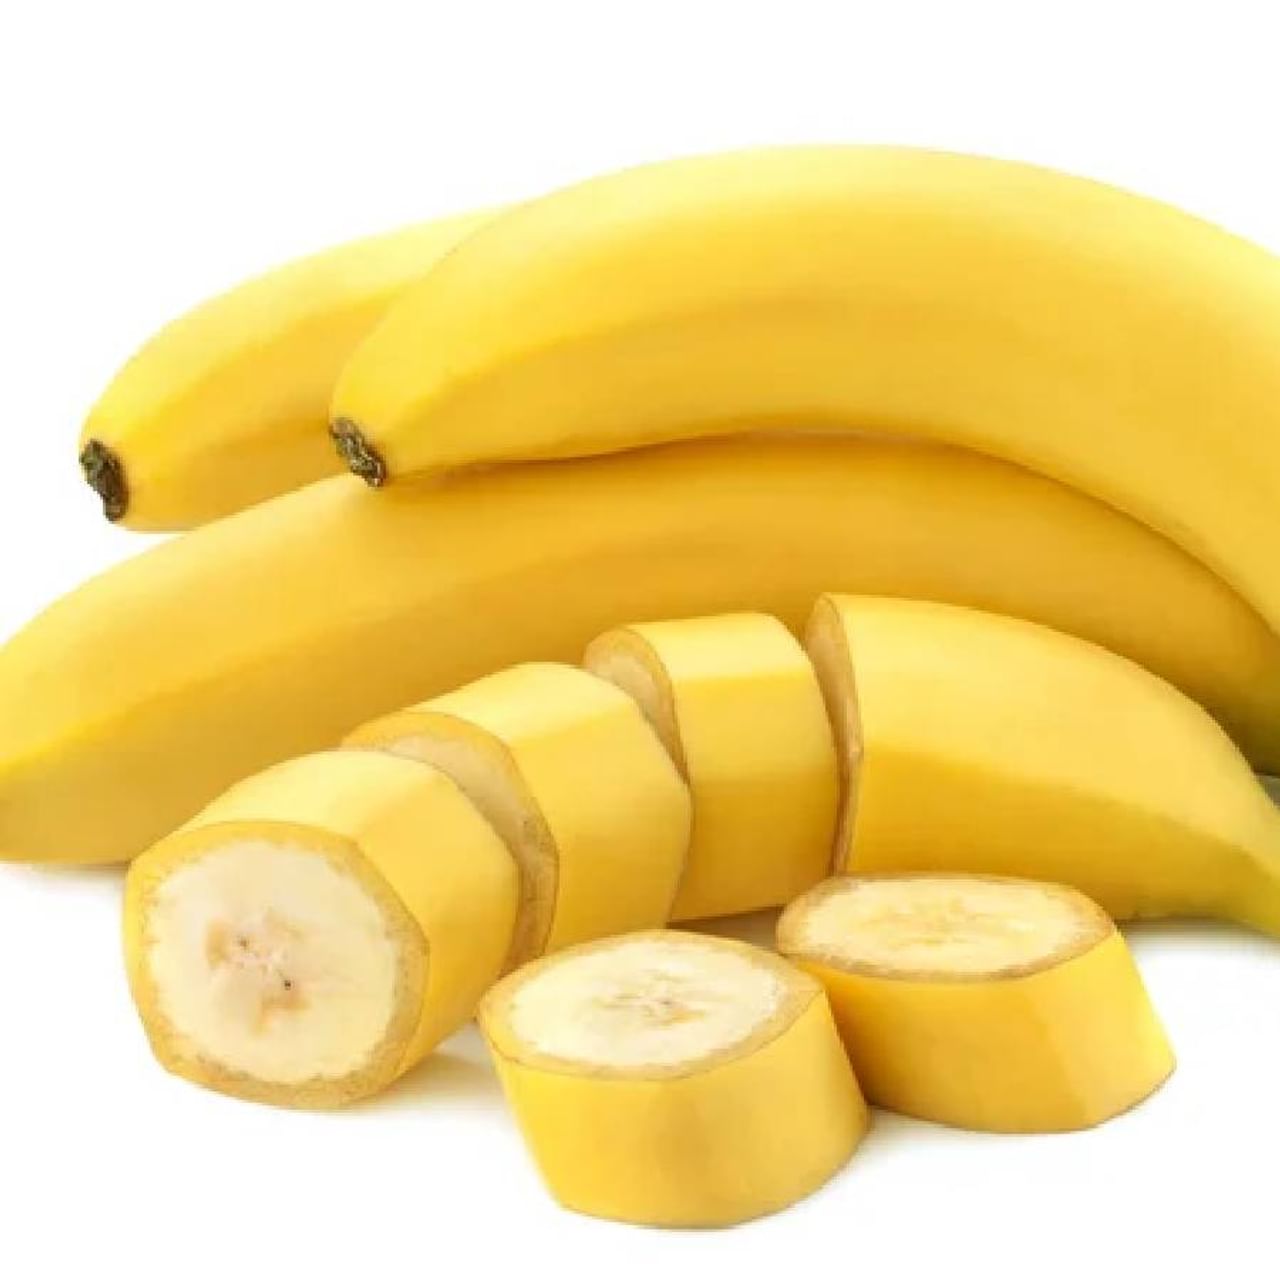 फायबरयुक्त केळीचे सेवन आरोग्यासाठी अनेक प्रकारे फायदेशीर मानले जाते. तज्ज्ञांच्या मते केळी शरीरात फायबरचे प्रमाण भरून गॅसची समस्या दूर करते. यामुळे केळीचा रोजच्या आहारामध्ये समावेश केल्याने पोटासंदर्भातील समस्या दूर होण्यास मदत होते. 